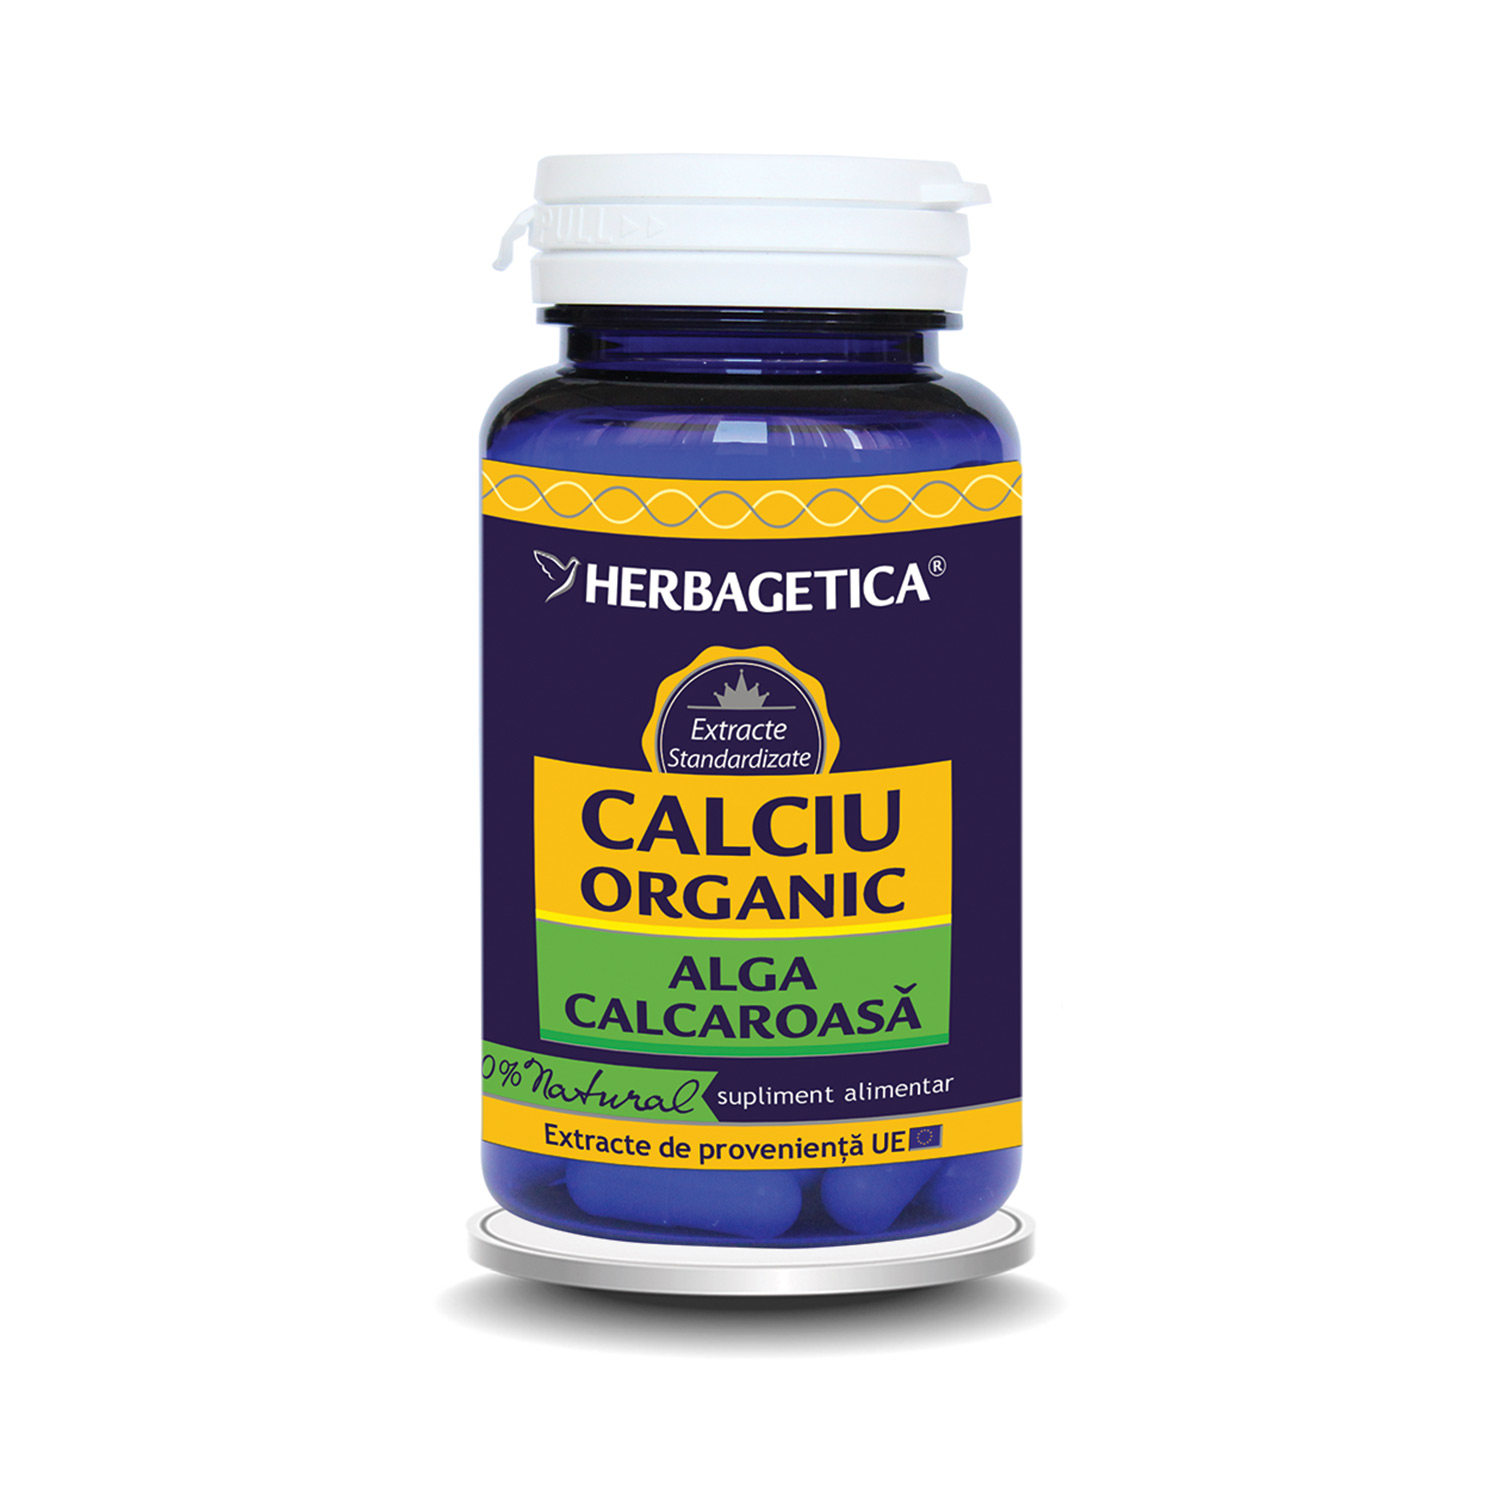 Calciu Organic cu alga calcaroasa, 30 capsule, Herbagetica